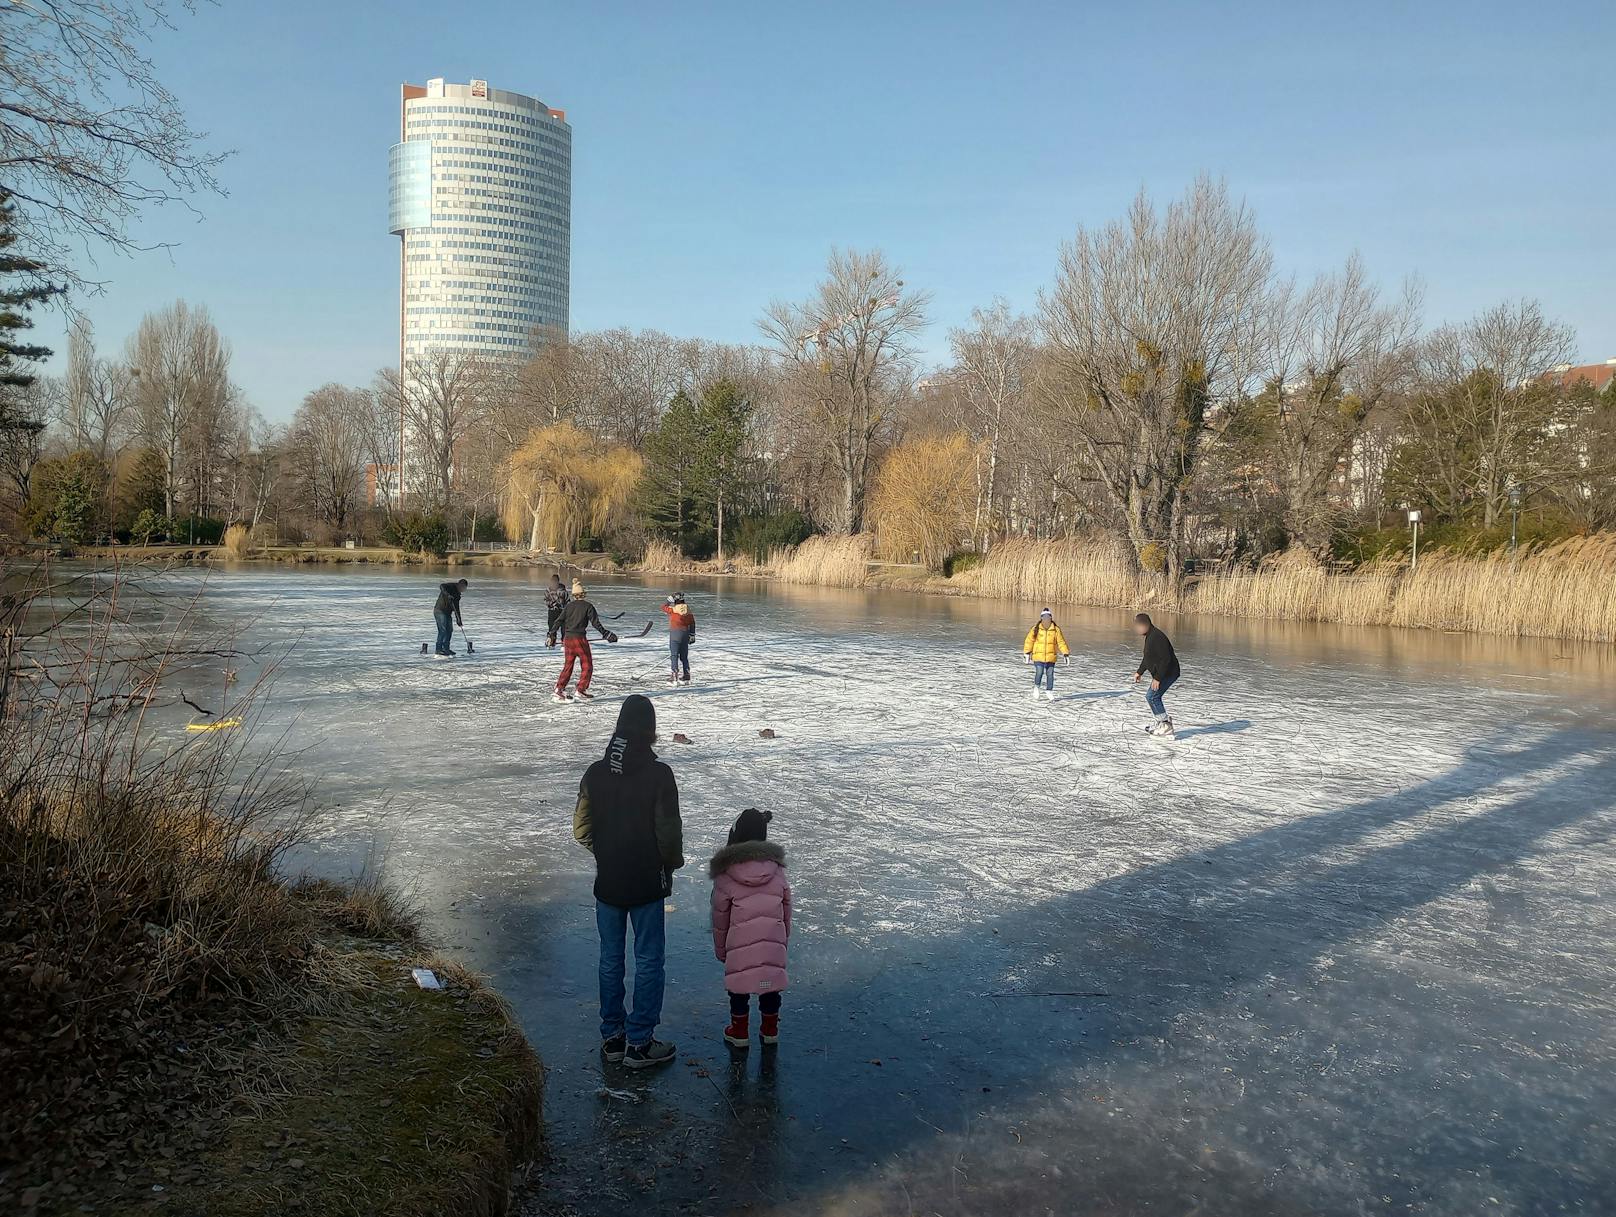 10.02.2023: Eishockey auf der Alten Donau: Bitte nicht nachmachen! – <a href="https://www.heute.at/s/lebensgefahr-wiener-spielen-hockey-auf-eisiger-donau-100254393">Weiterlesen &gt;&gt;&gt;</a>